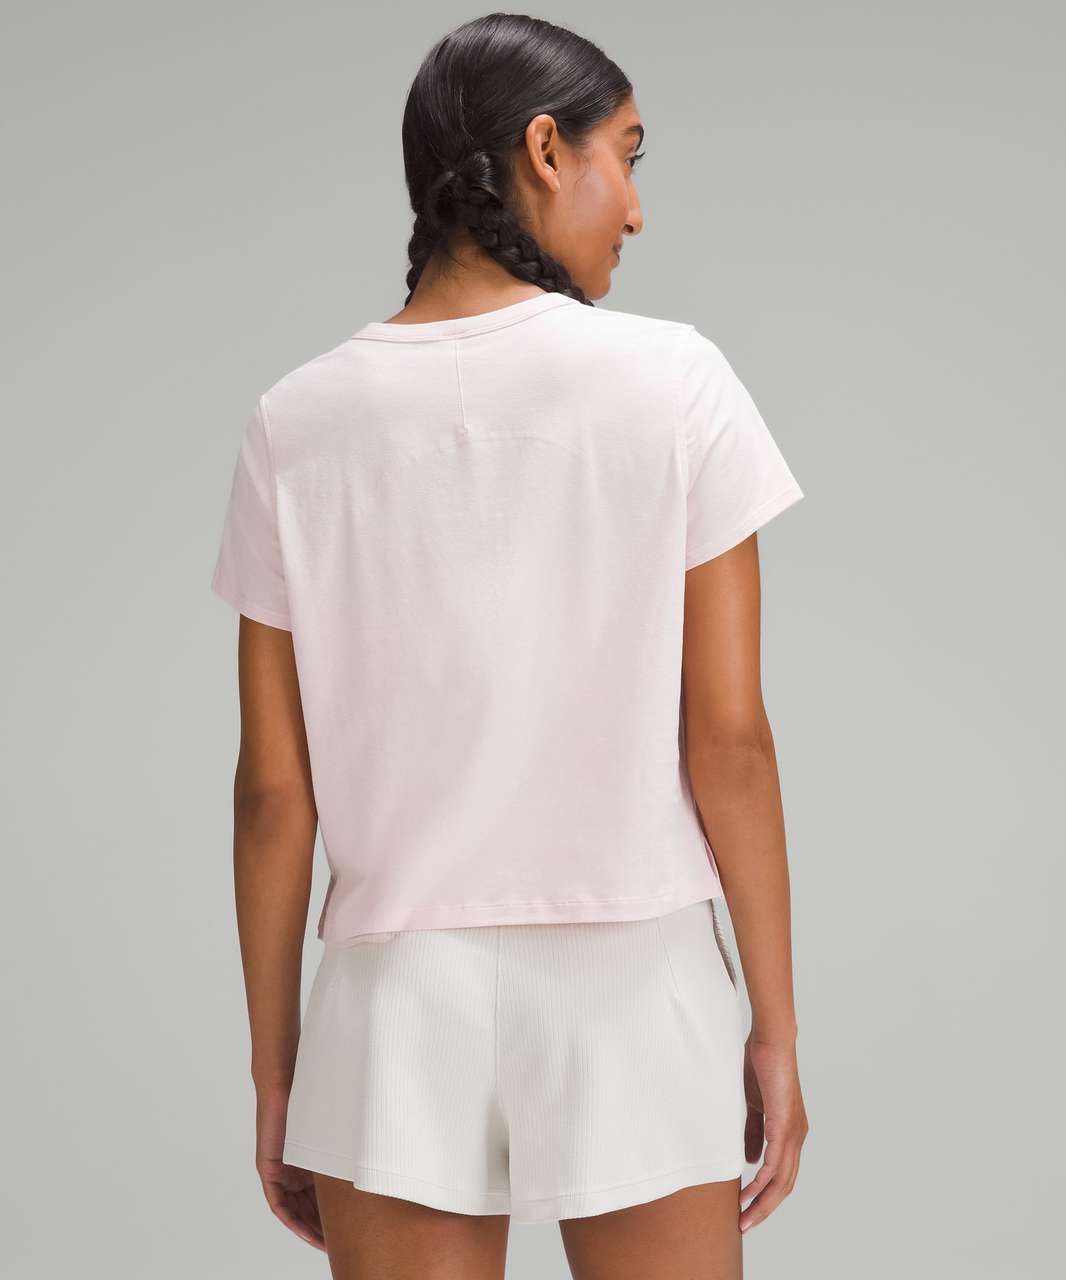 Lululemon Classic-Fit Cotton-Blend T-Shirt - Flush Pink